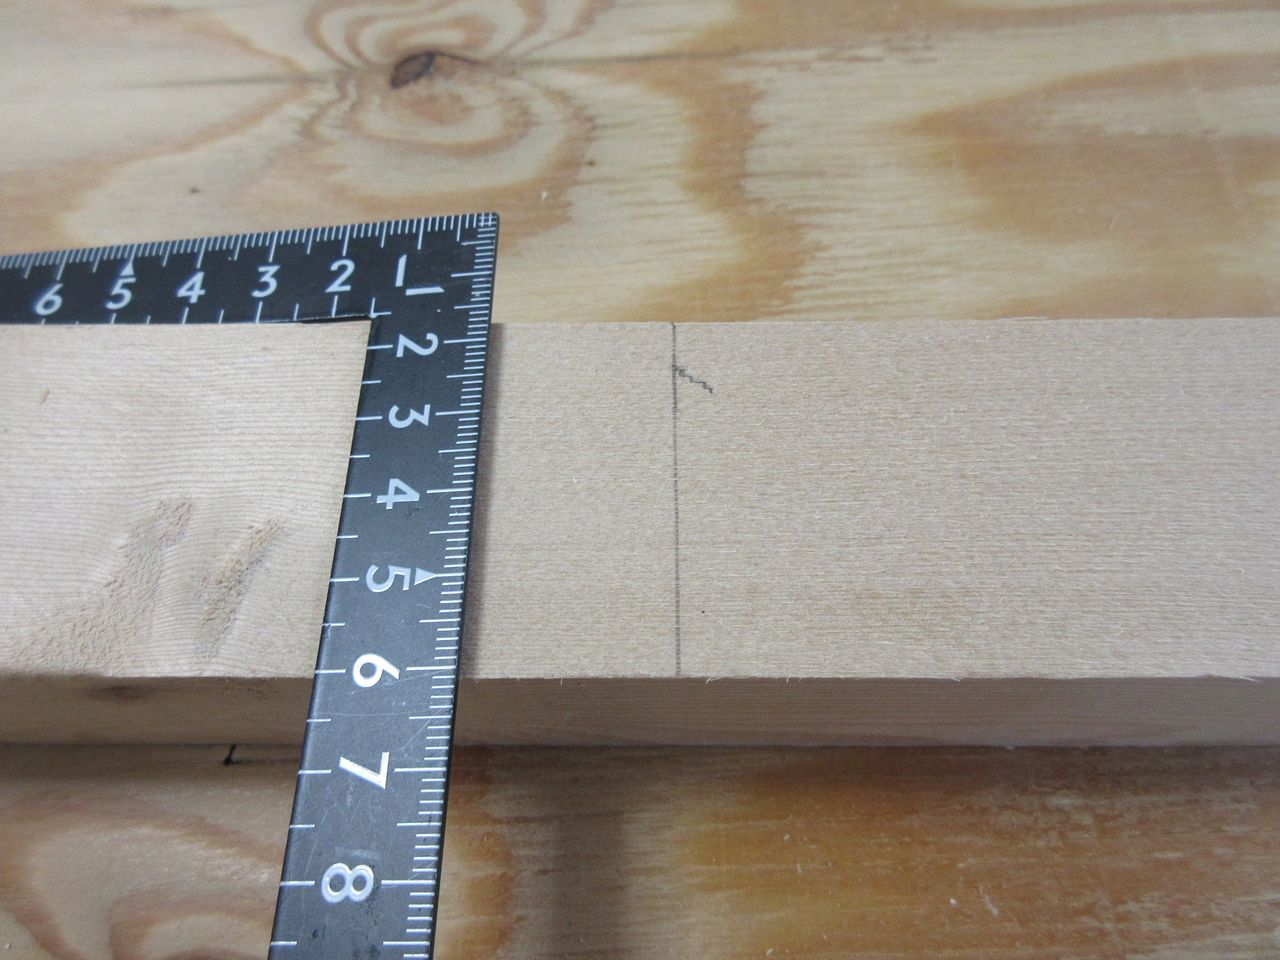 これも簡単です。レ点の先っぽに差し金を合わせれば、一本の線が引けます。この線に合わせてノコギリや丸ノコでカットすれば、自分の欲しい寸法で木材をカットすることができます。